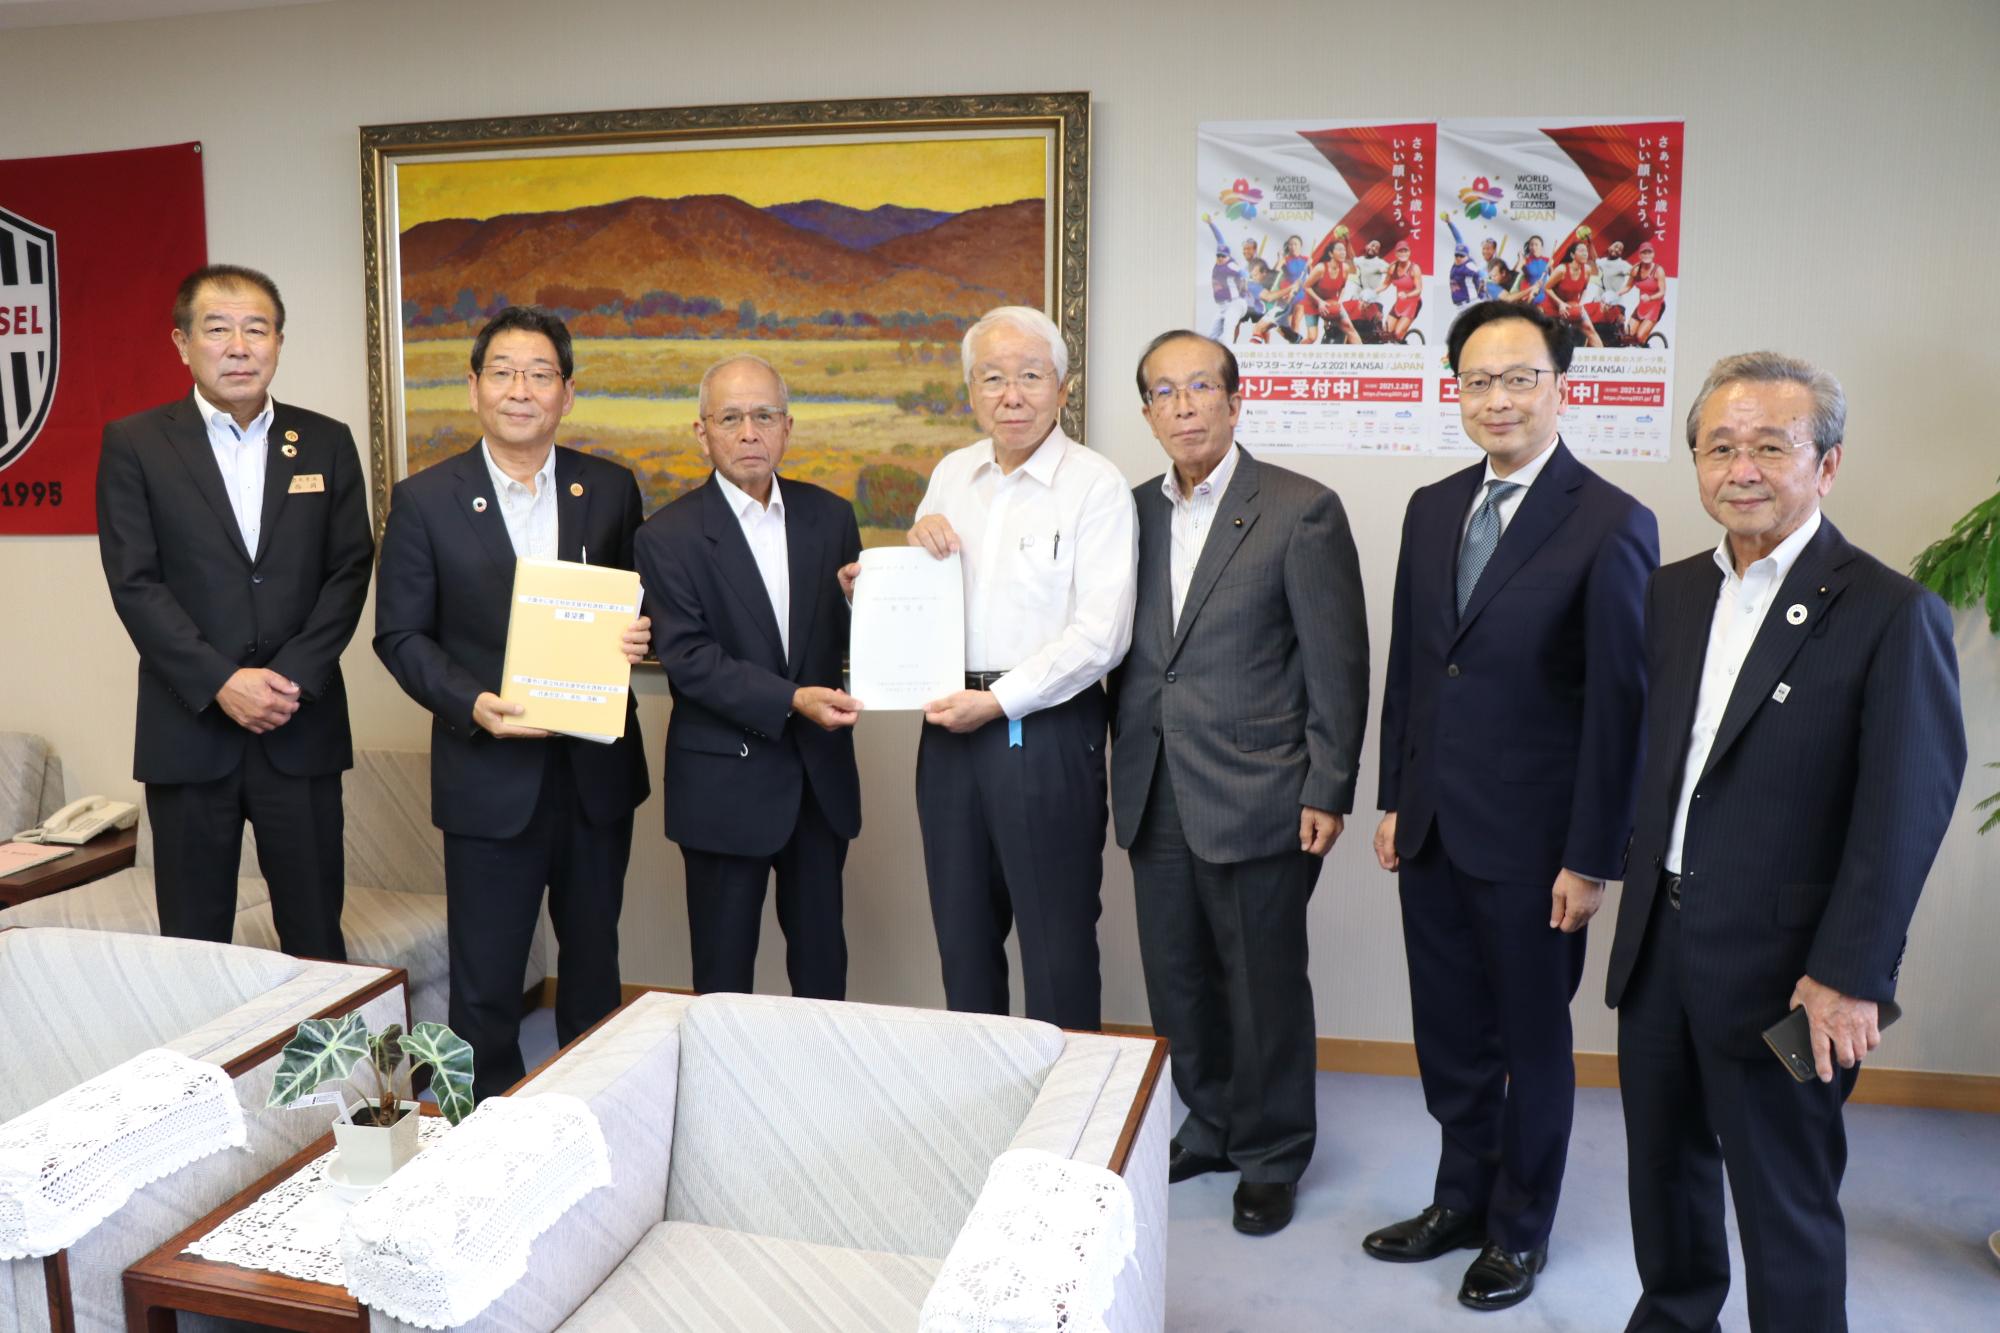 知事室にて左から西岡教育長、福元市長、要望書を手にする赤松氏と井戸知事、右端に春名県議会副議長の写真